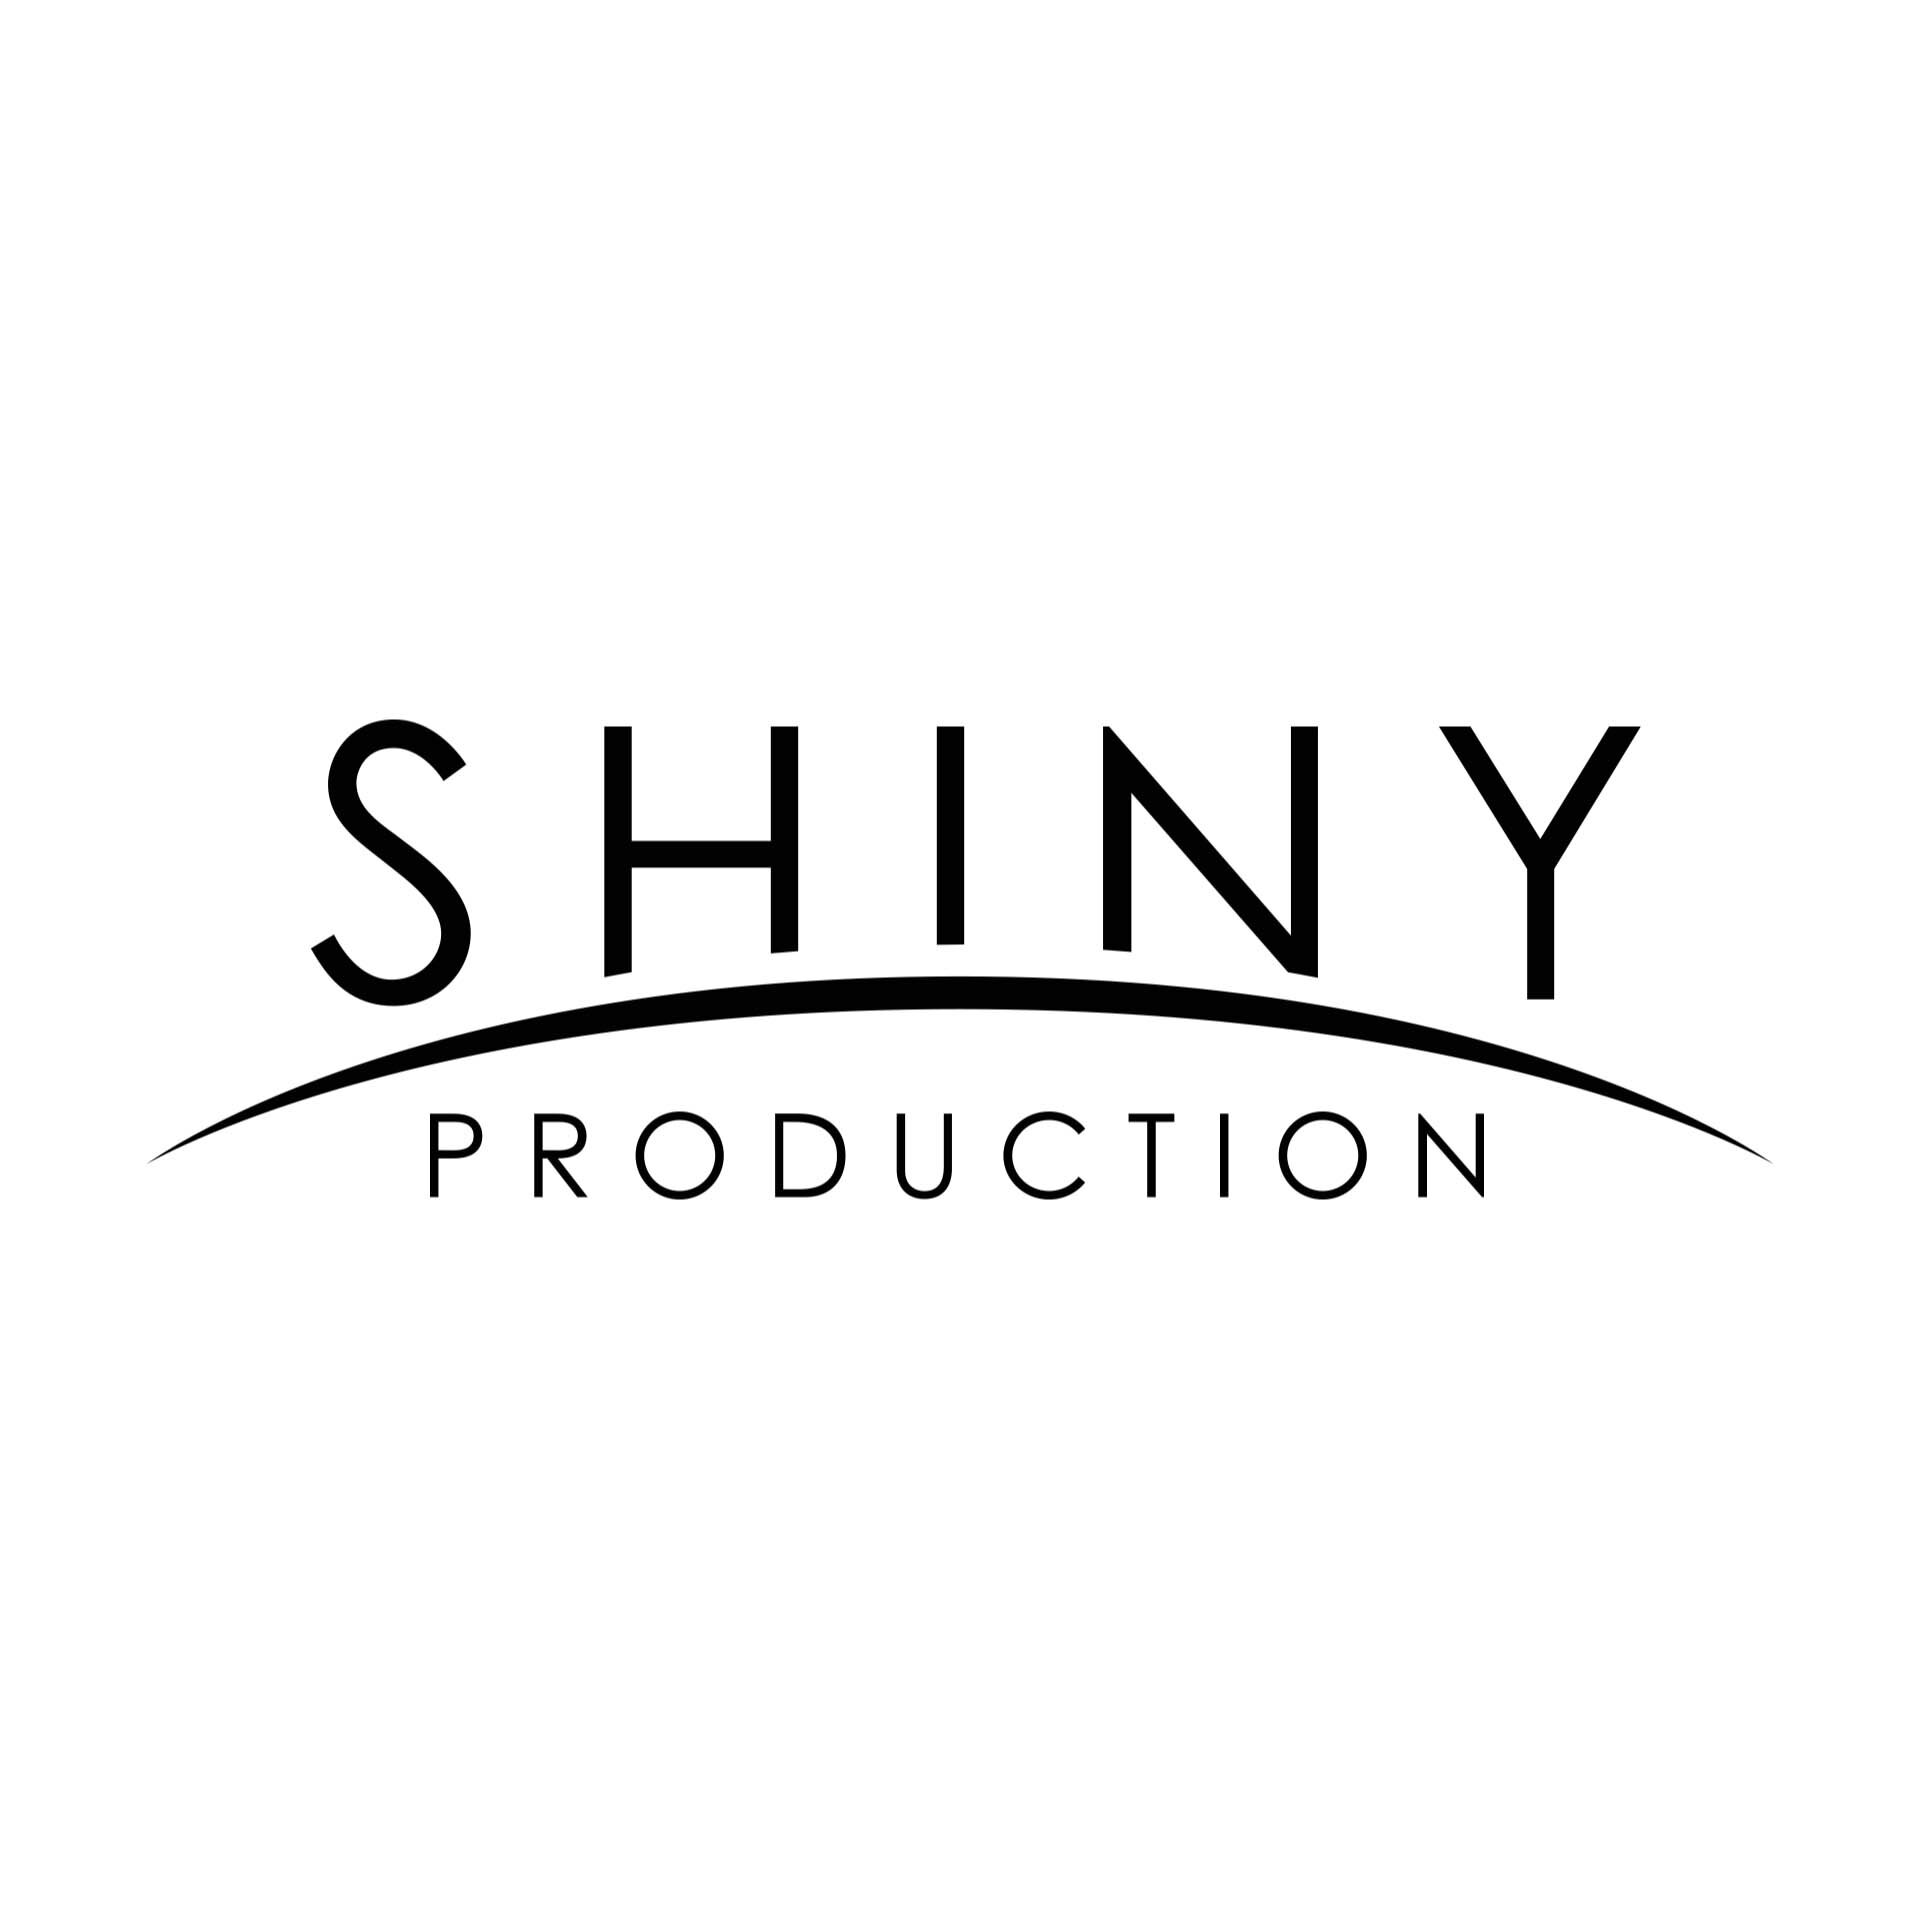 Shiny Production